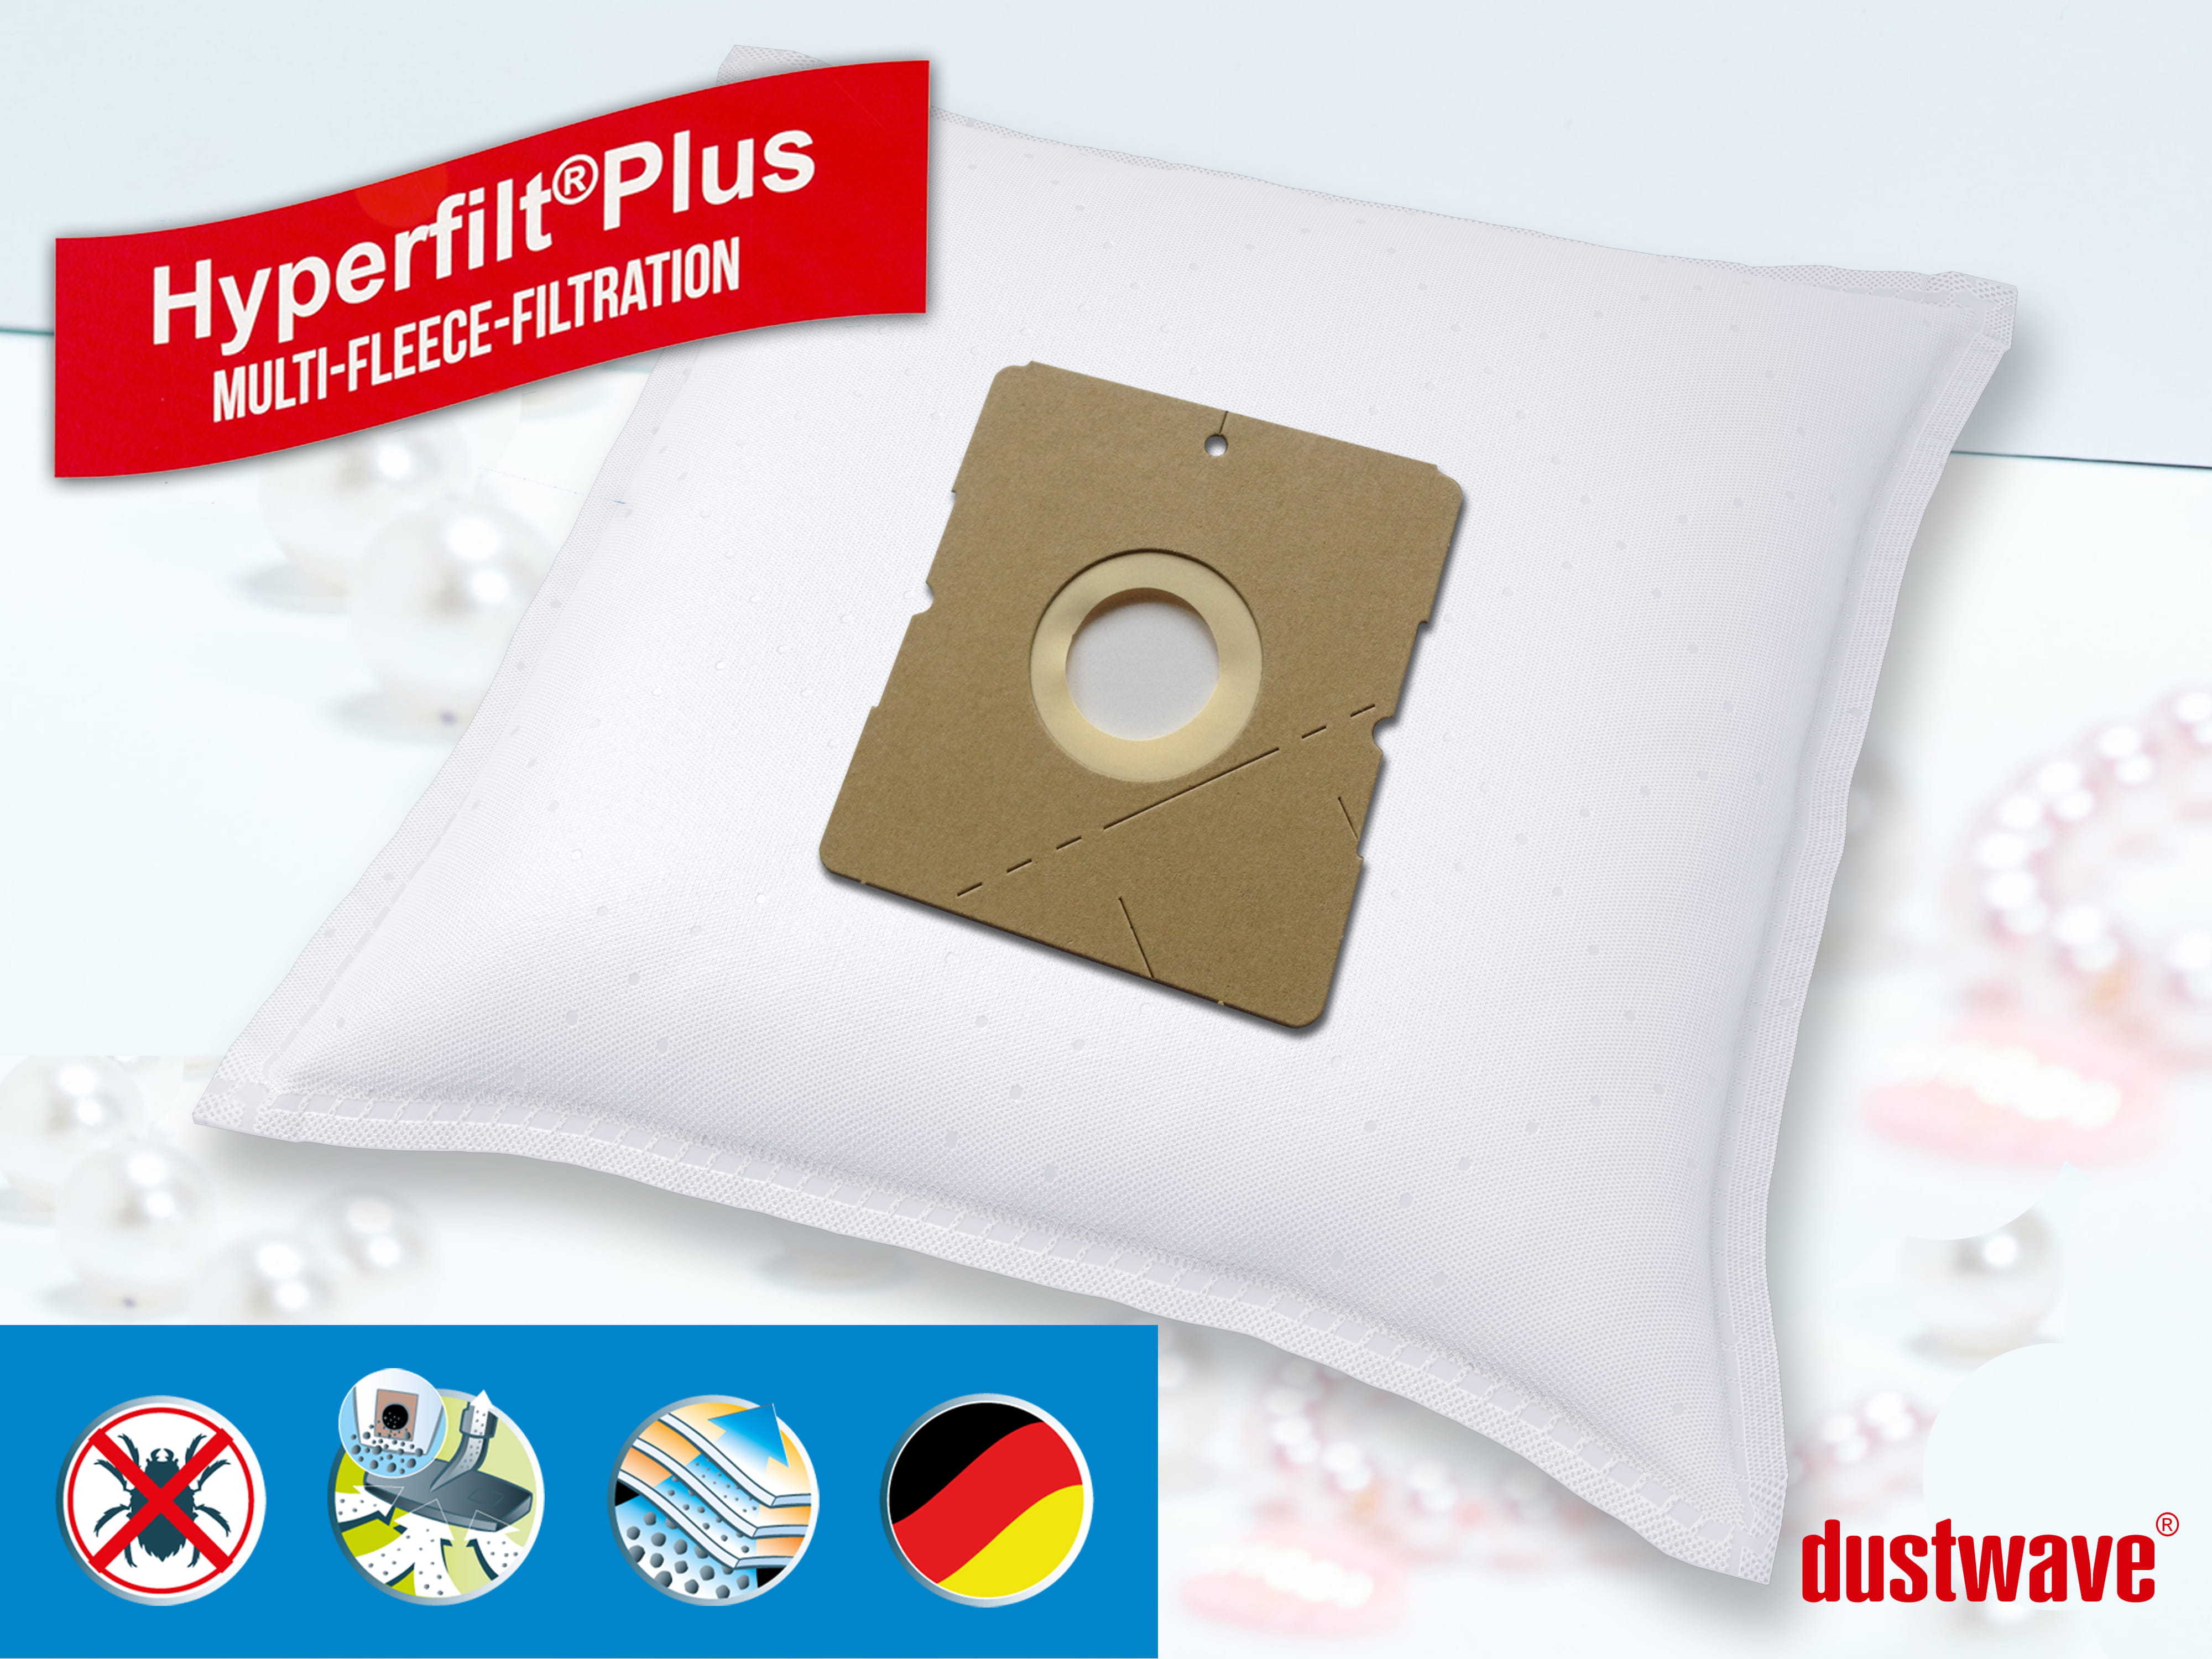 Dustwave® 10 Staubsaugerbeutel für Hoover S9040 011 DRY - hocheffizient, mehrlagiges Mikrovlies mit Hygieneverschluss - Made in Germany